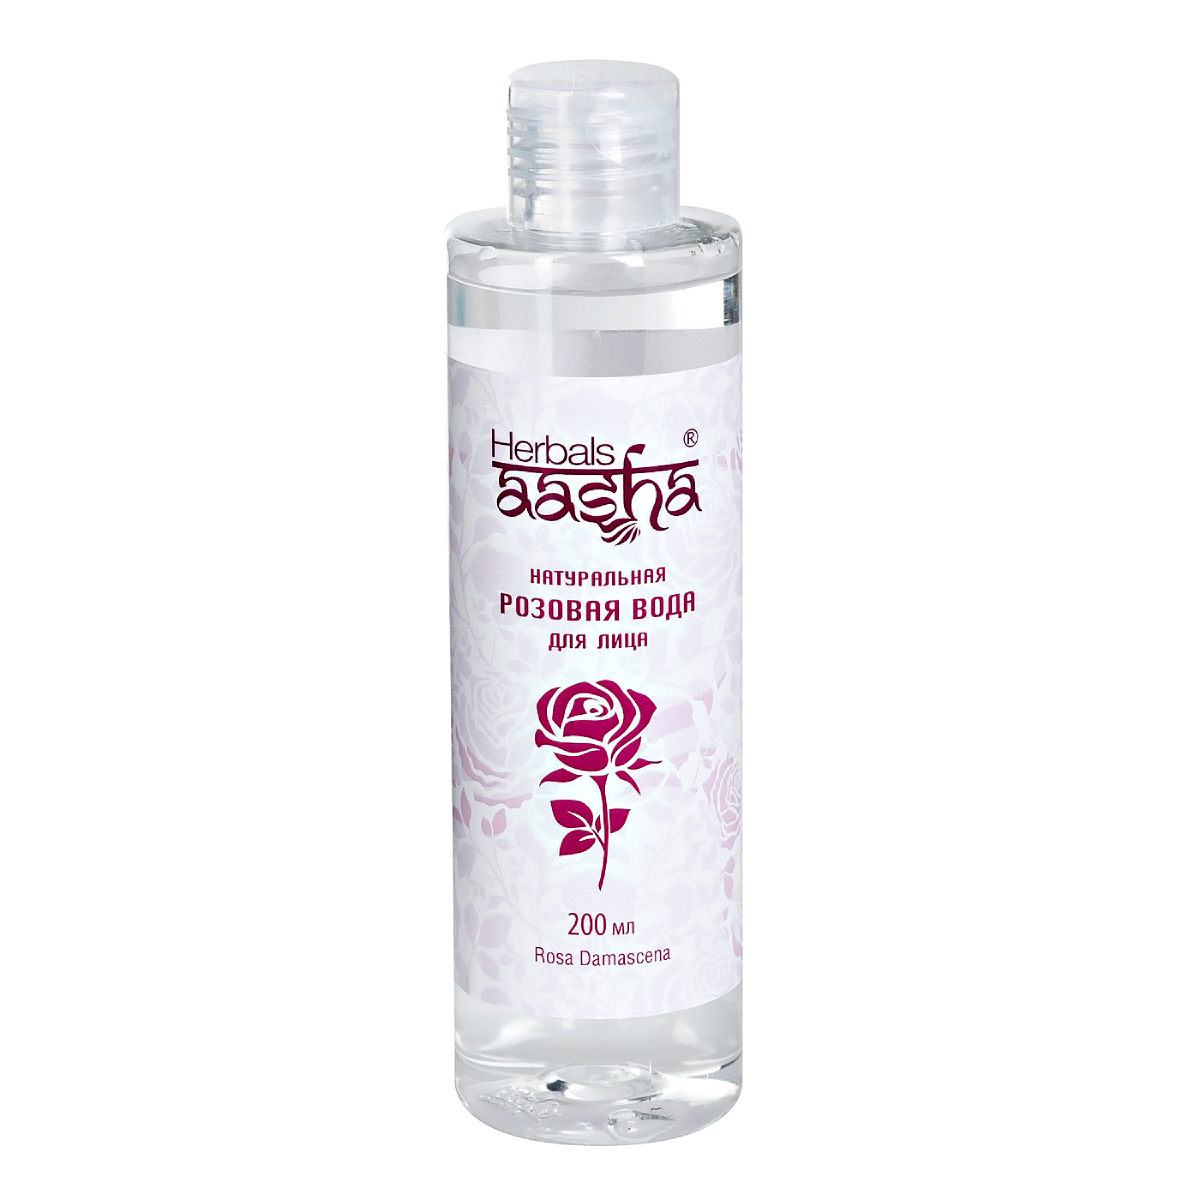 Натуральная розовая вода Aasha Herbals для лица, 200 мл вода тбау 19 литров